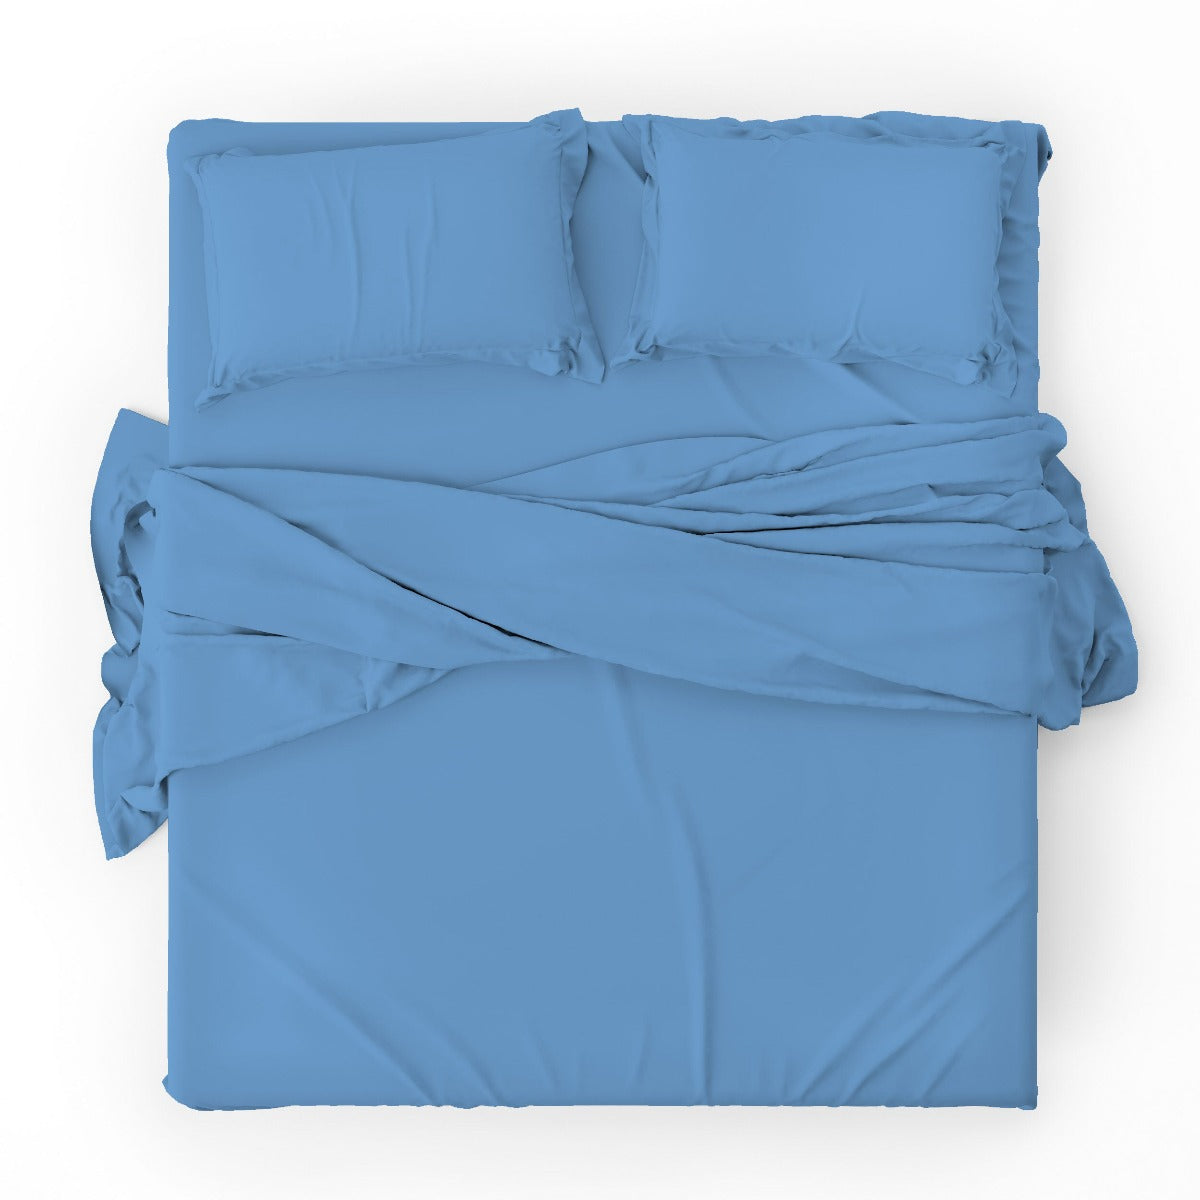 Duvet cover with pillowcases - Plain White